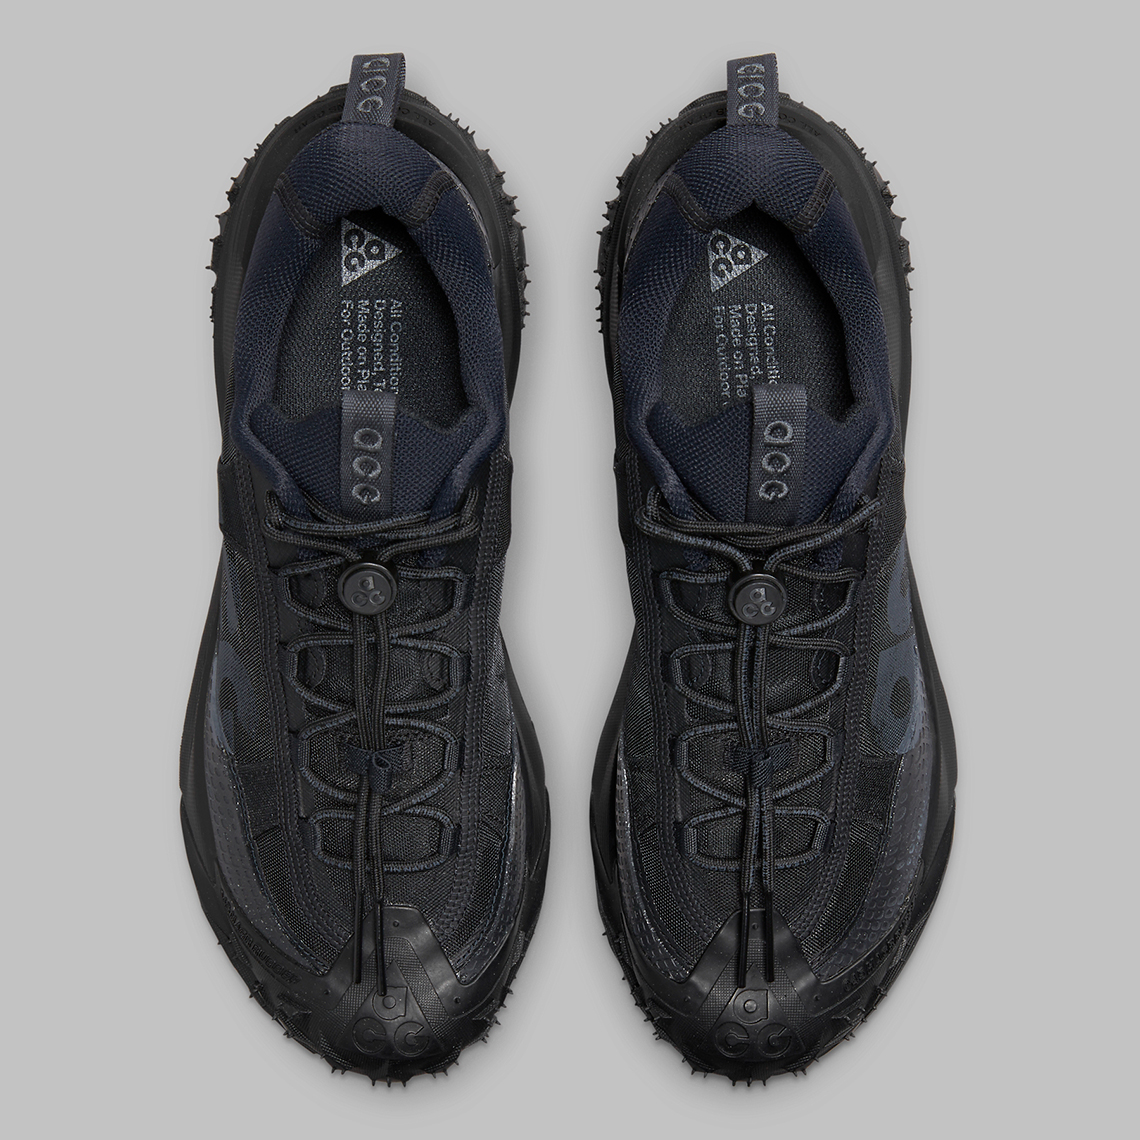 Nike Acg Mountain Fly 2 Low Black Dv7903 002 Release Date 4